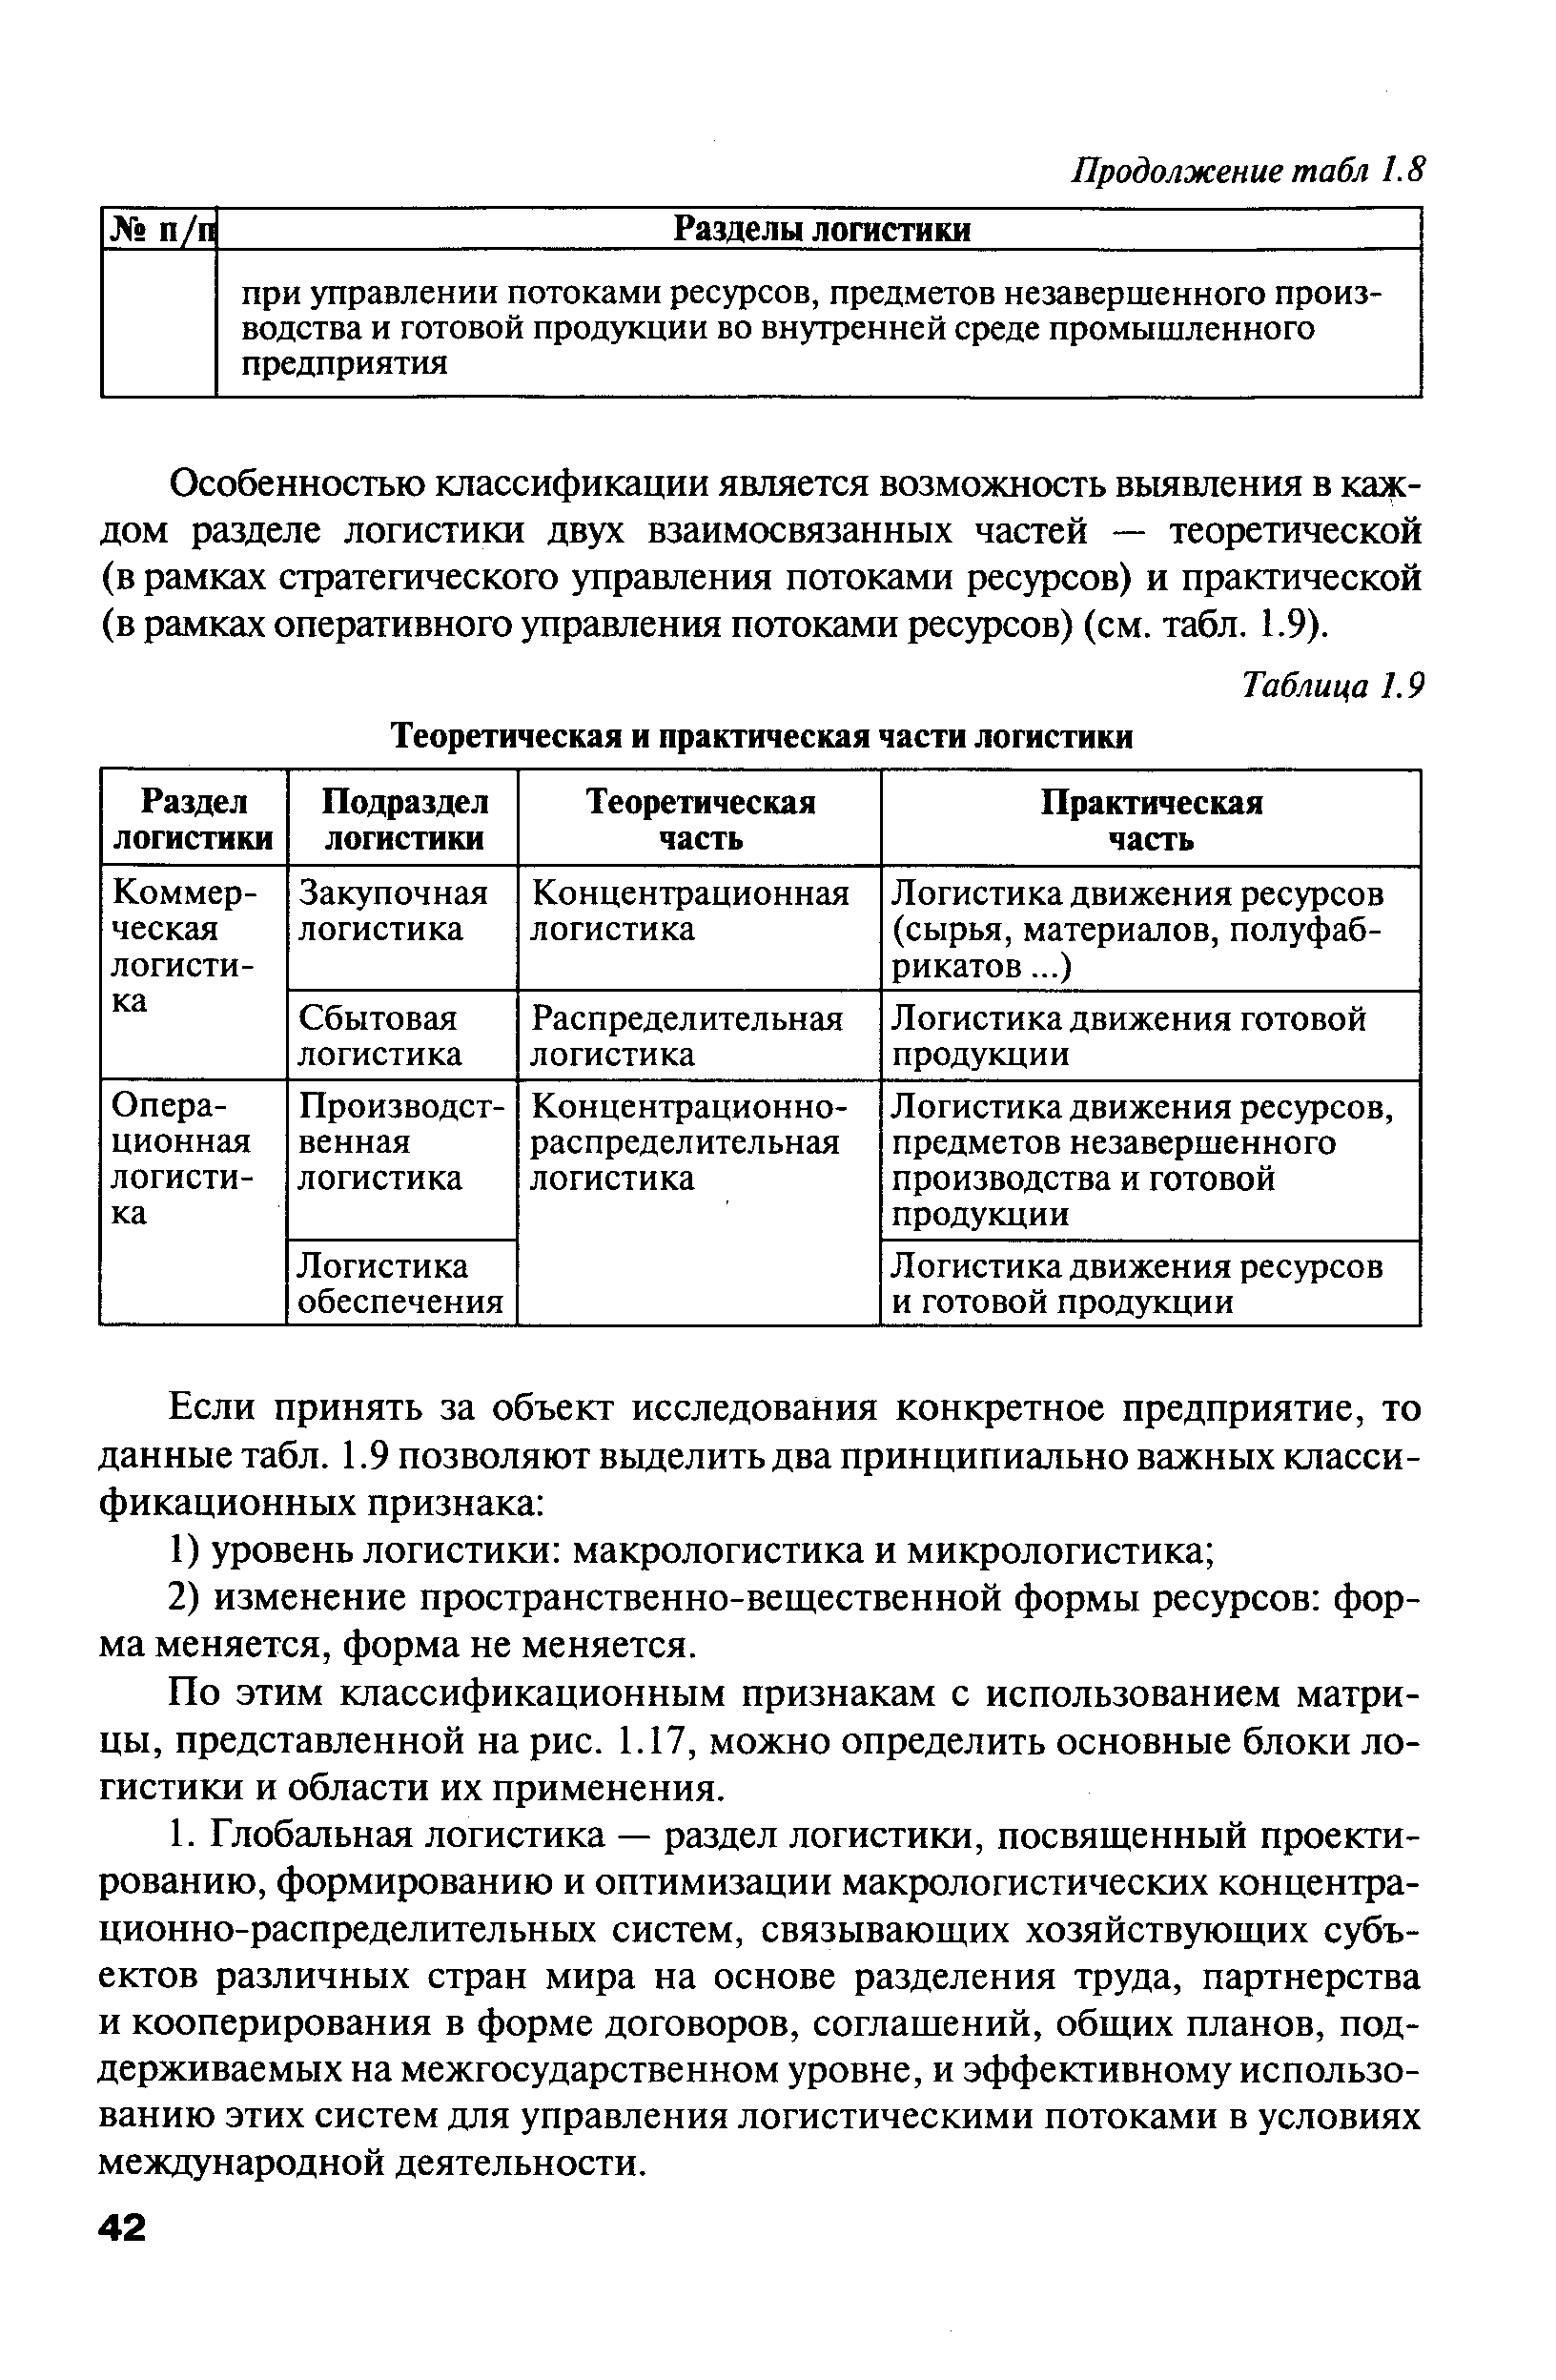 Таблица 1.9 Теоретическая и практическая части логистики
